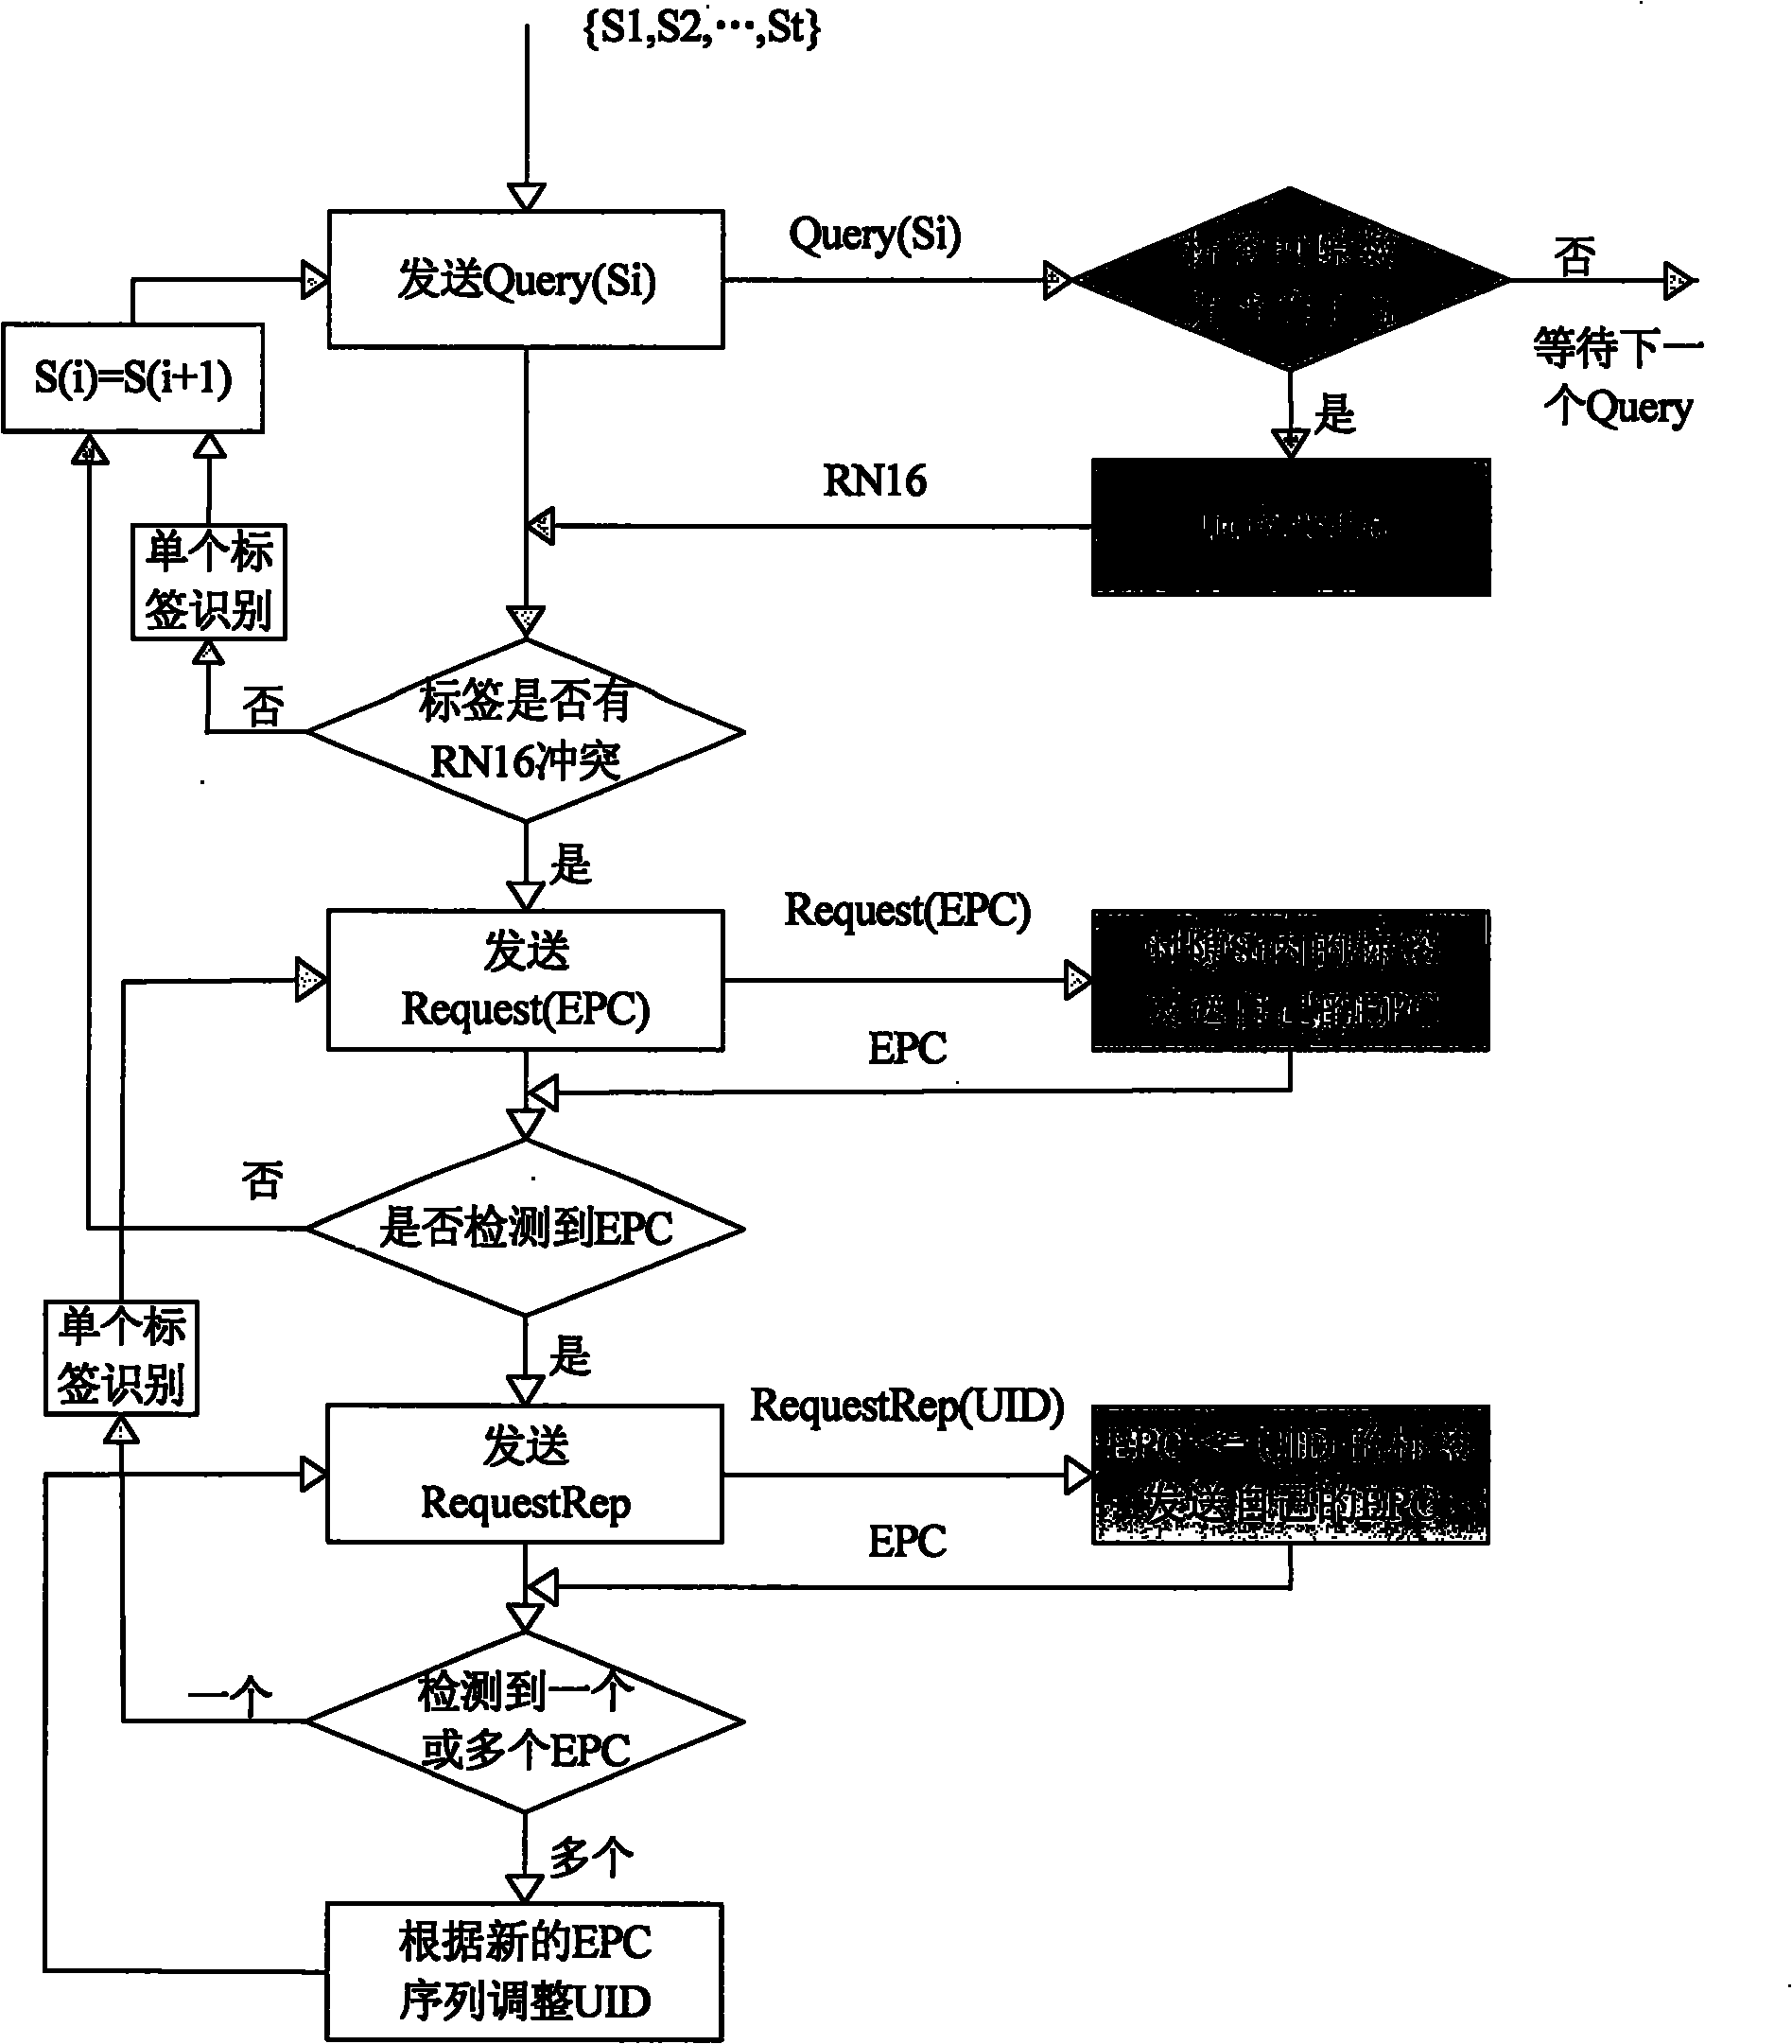 Multi-tag identification method of RFID reader